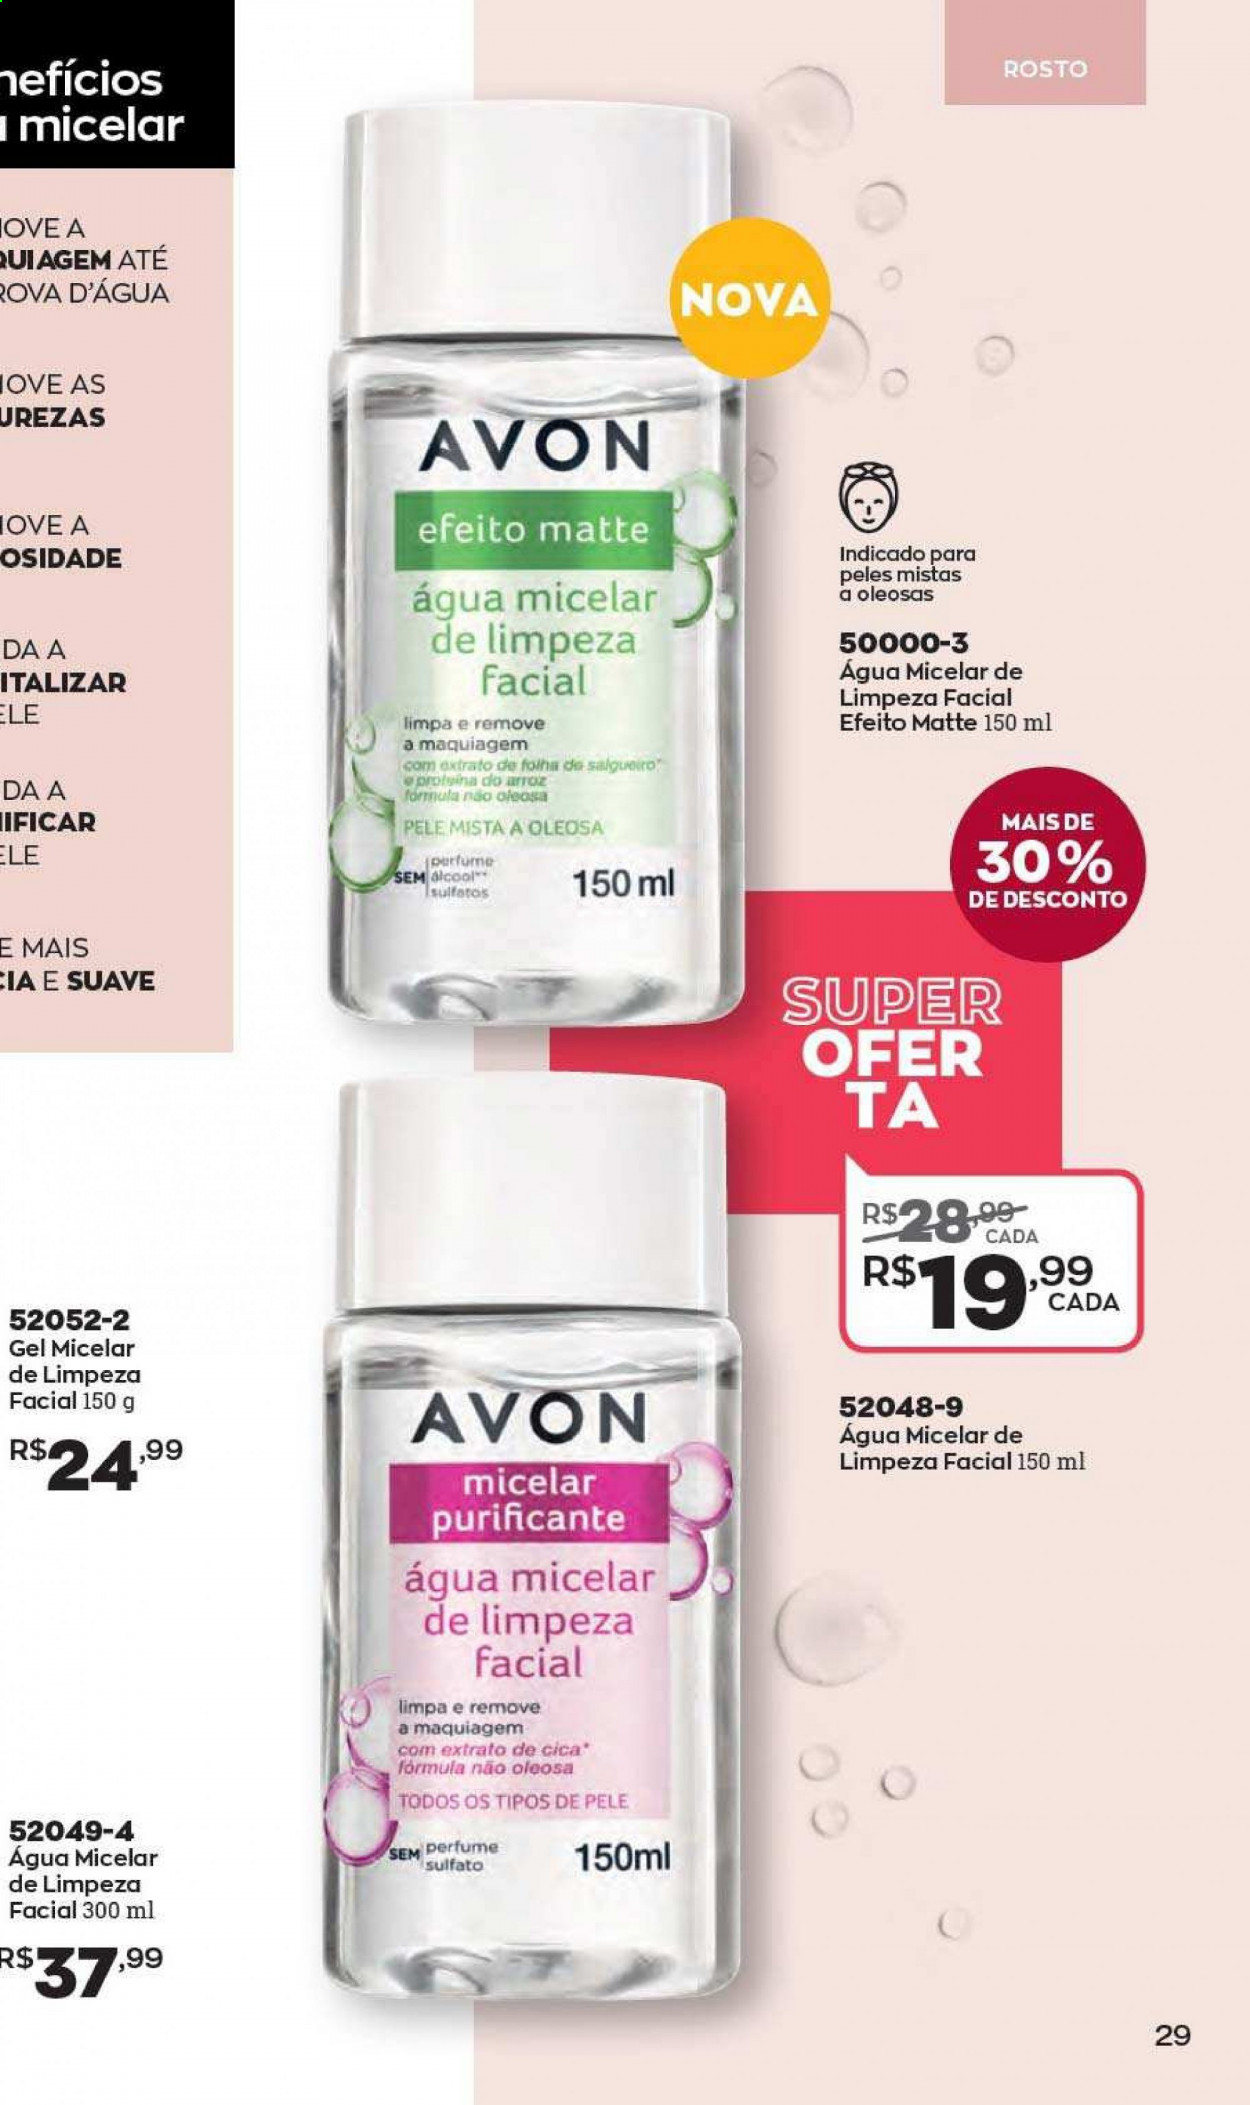 thumbnail - Folheto Avon - Produtos em promoção - Avon, água micelar, maquiagem, perfume. Página 29.